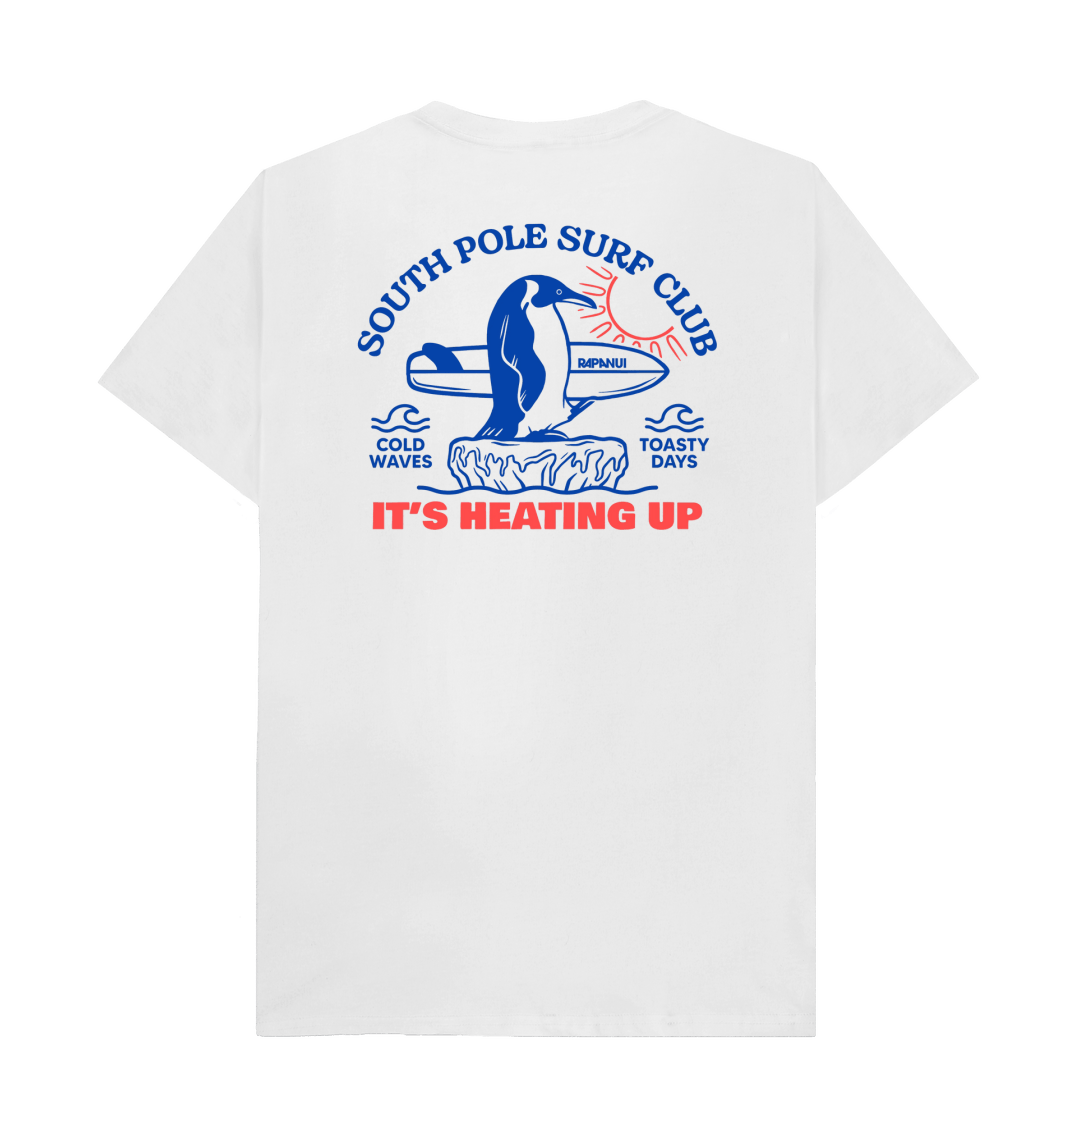 South Pole Surf Club T - Shirt - Printed T - shirt